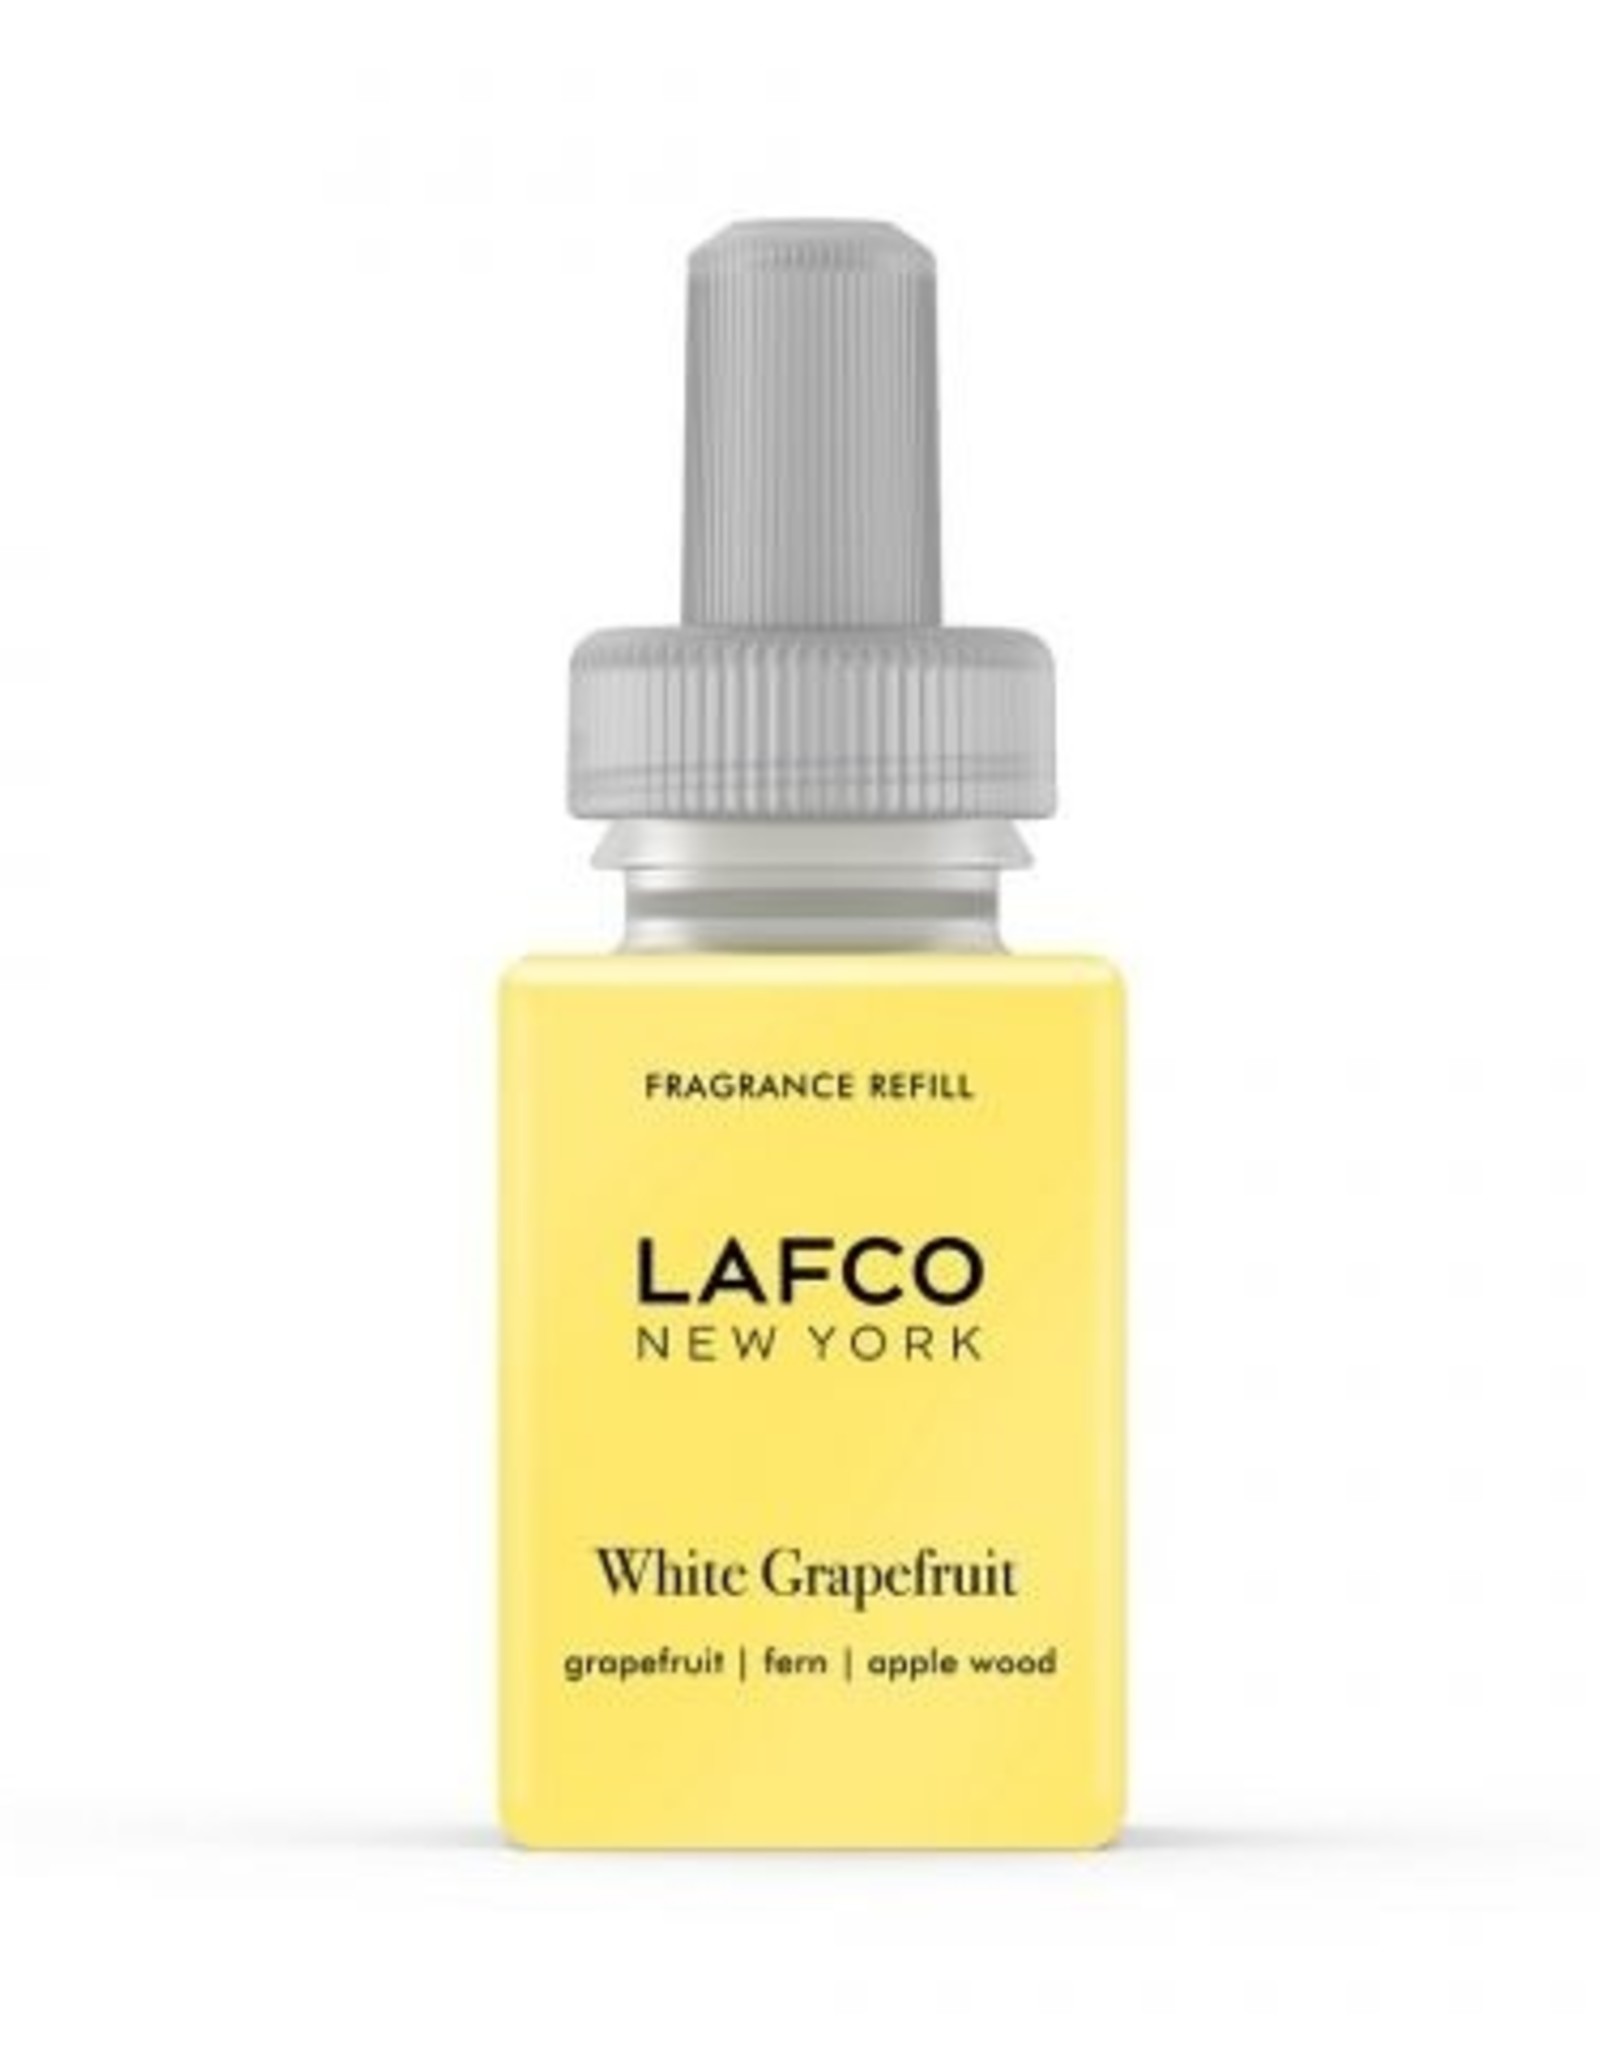 LAFCO Smart Diffuser Refill - White Grapefruit